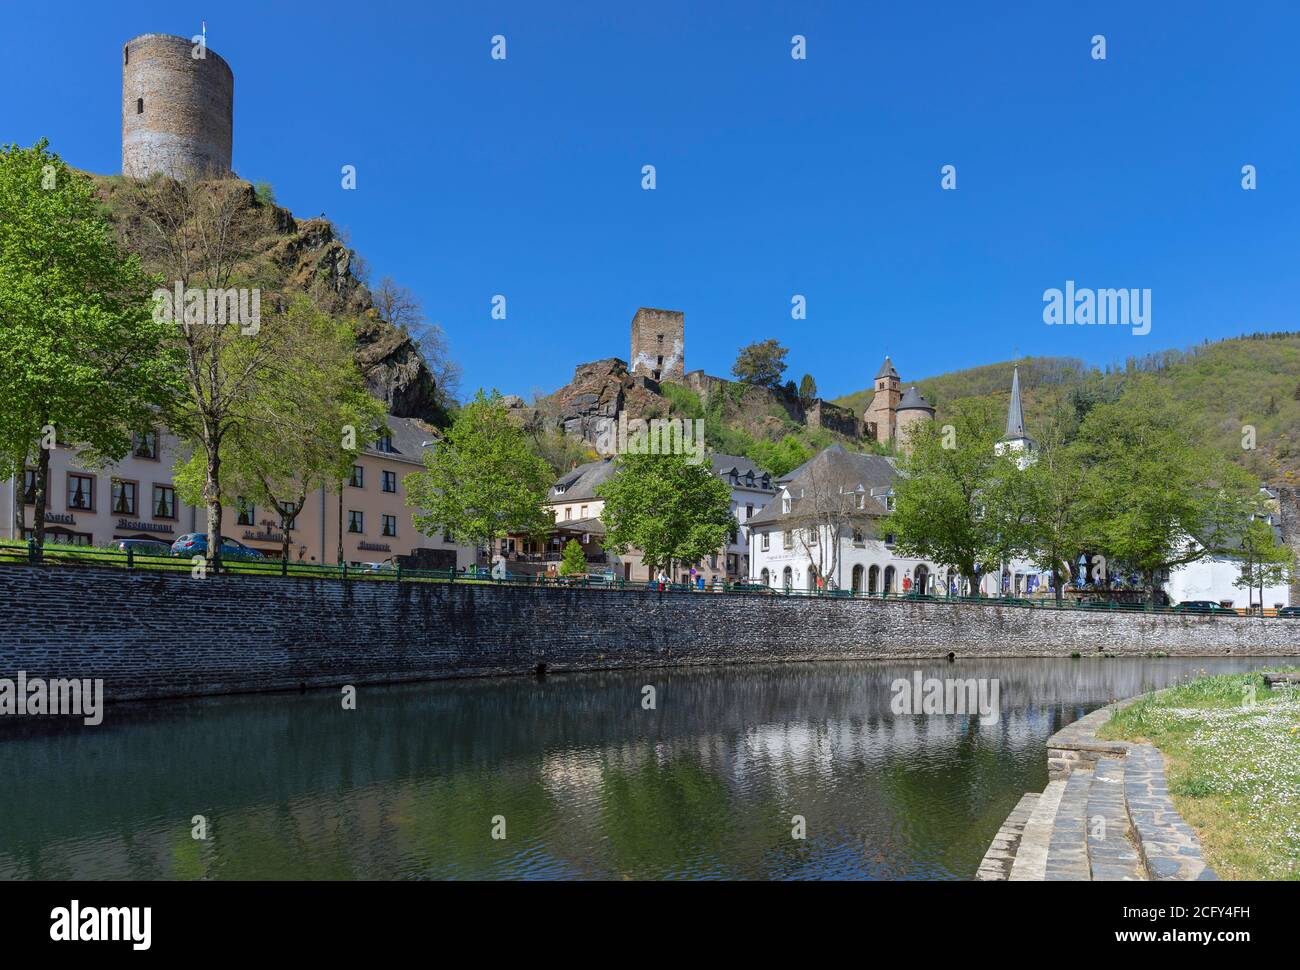 Europa, Lussemburgo, Diekirch, Esch-sur-Sûre, vista sul fiume Sûre e sul centro del villaggio Foto Stock